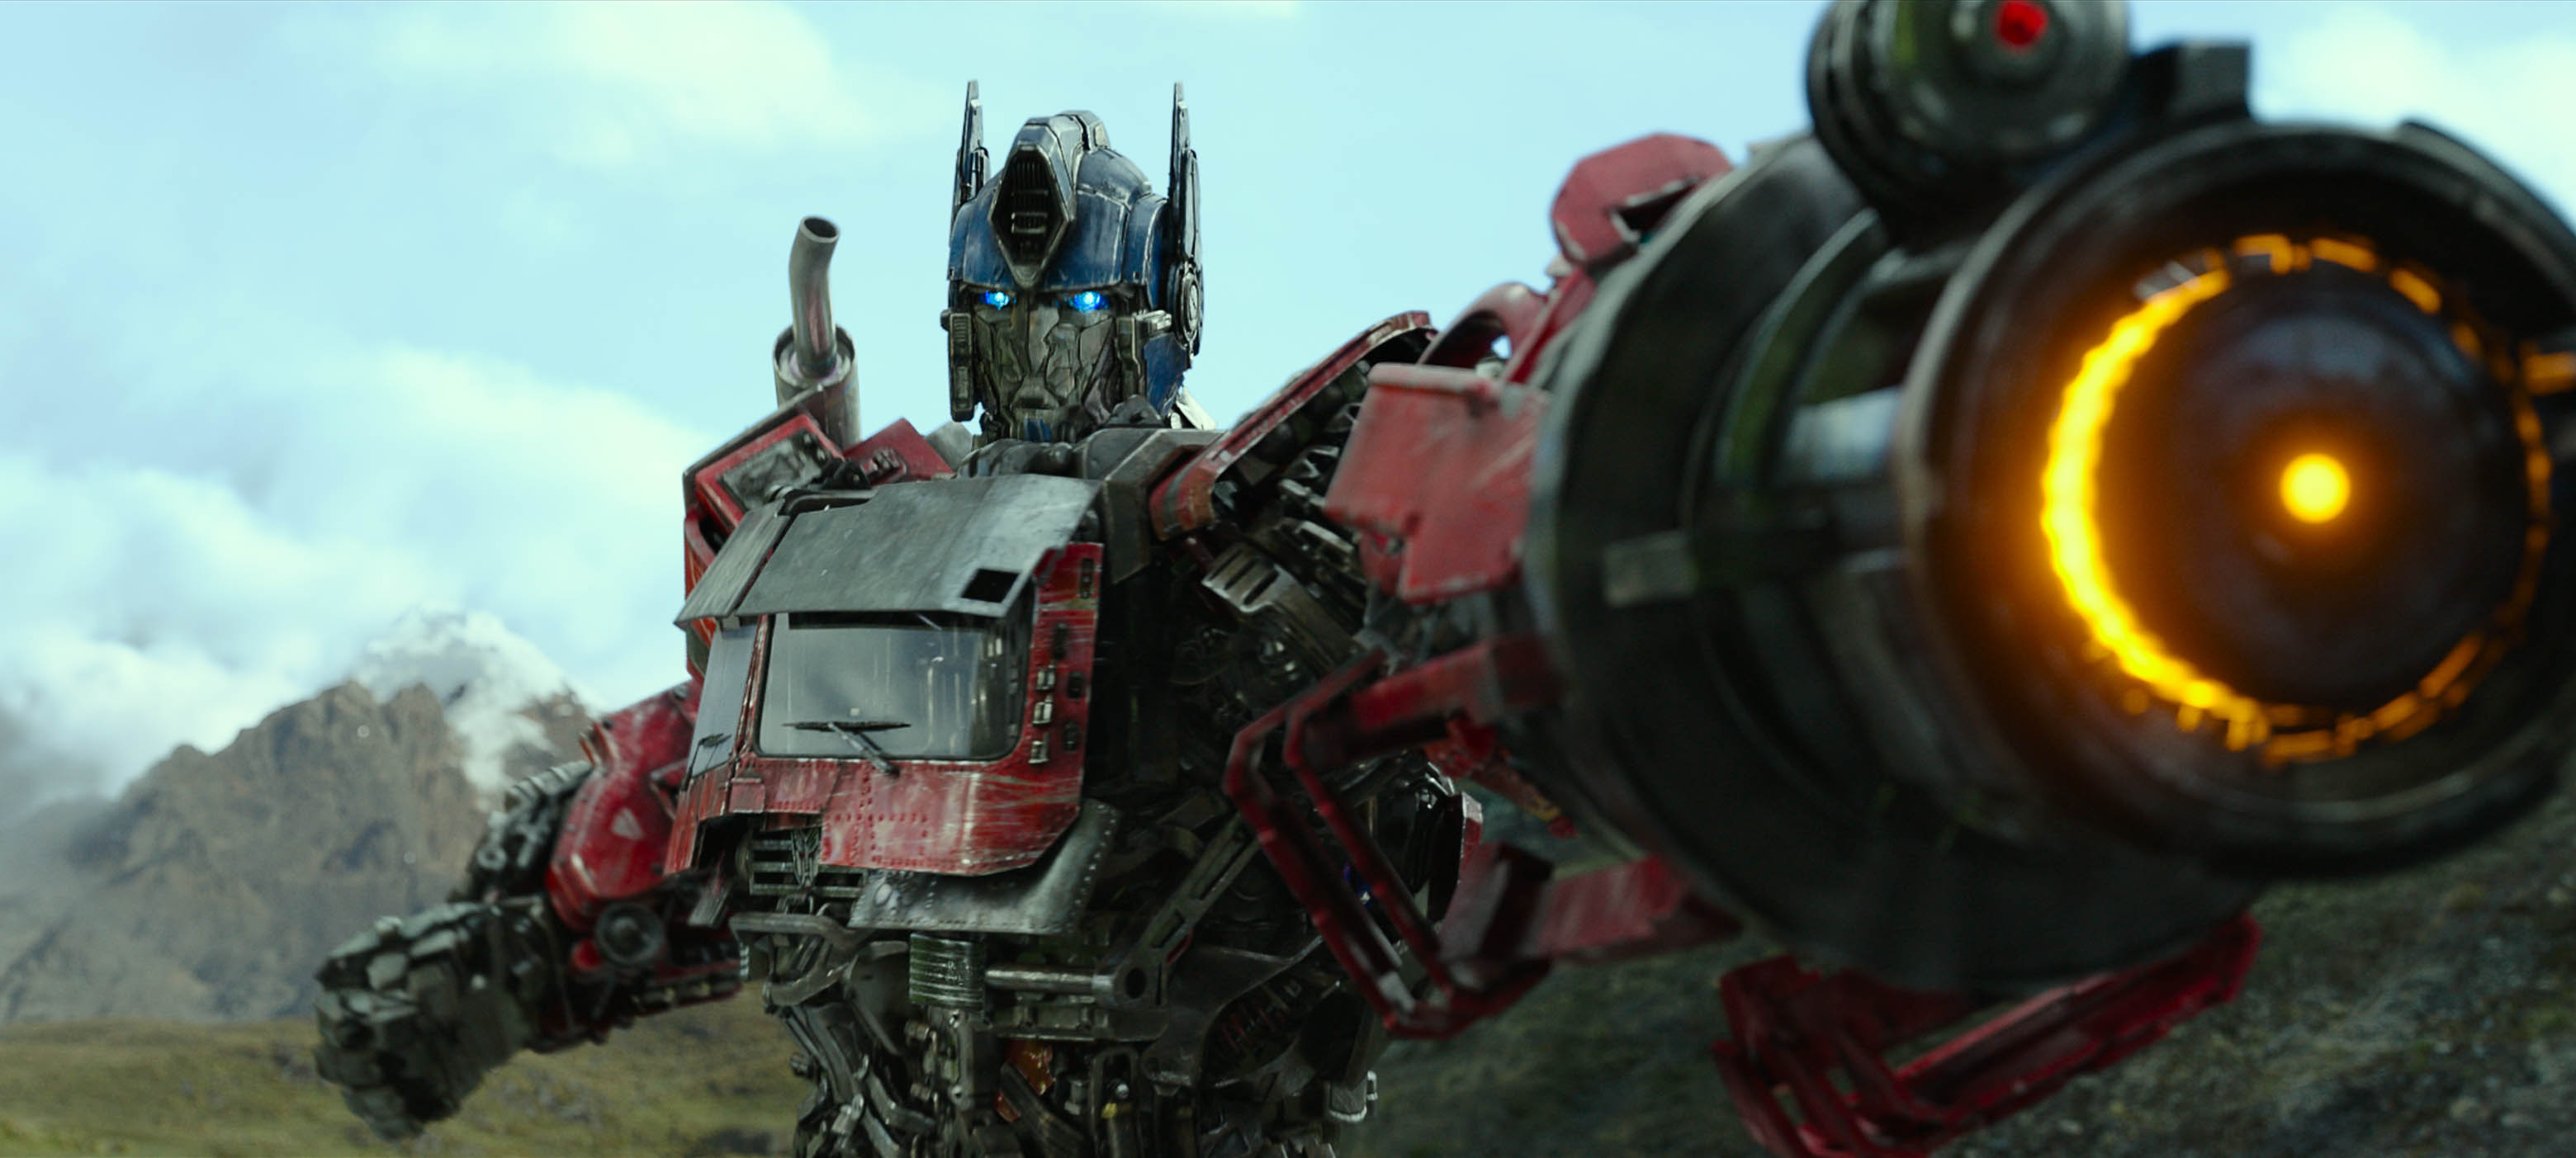 Pete Davidson adicionado ao elenco de Transformers: Rise of the Beasts